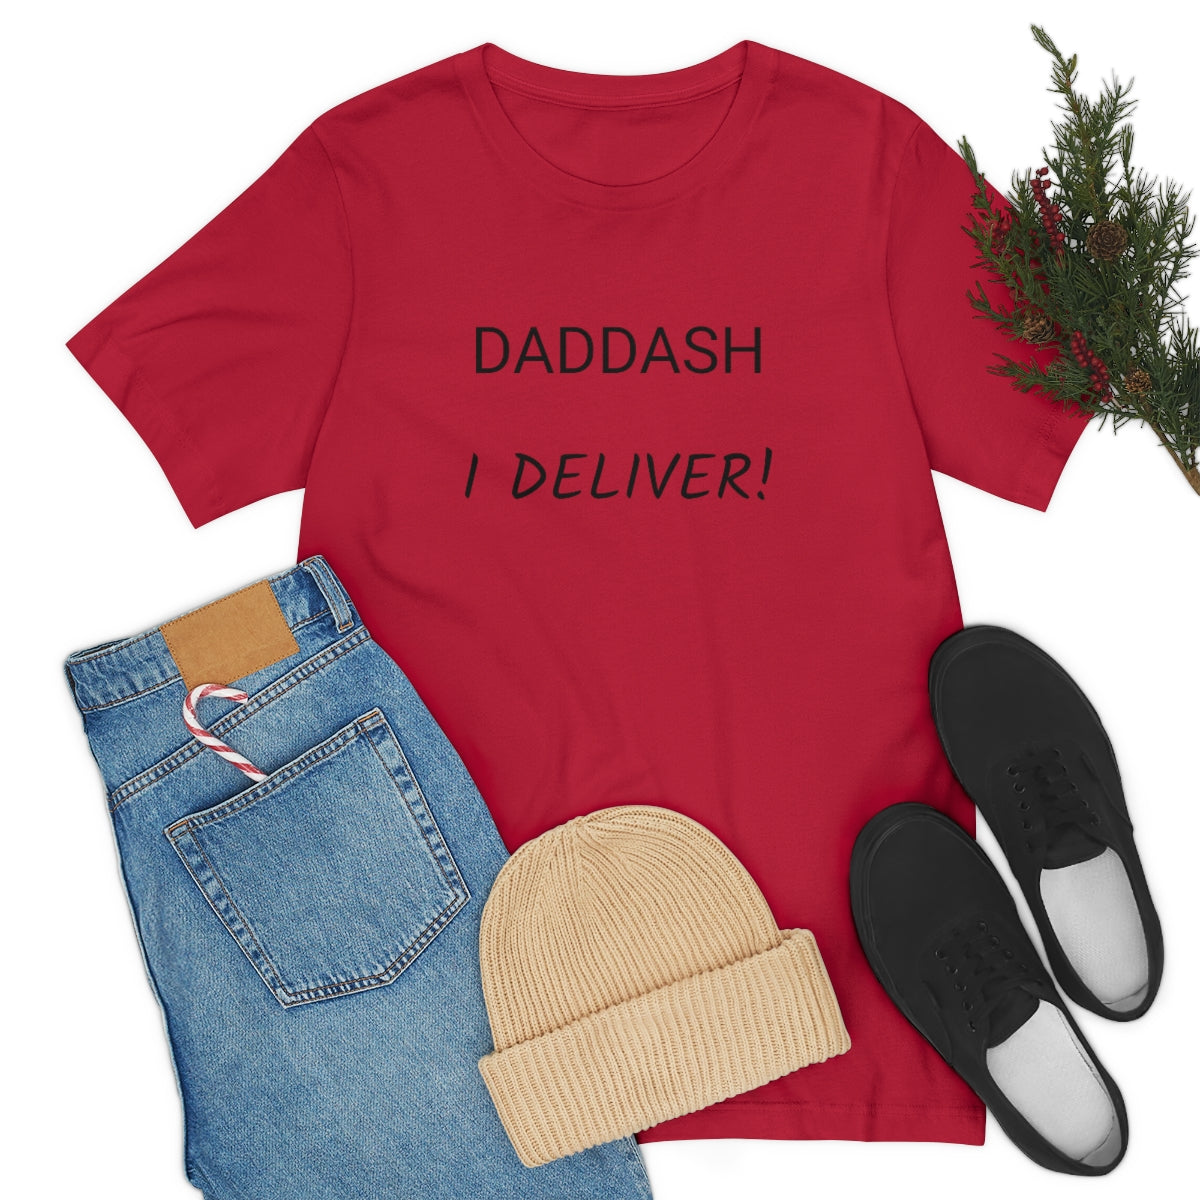 DADDASH I Deliver! - Unisex Jersey Short Sleeve Tee